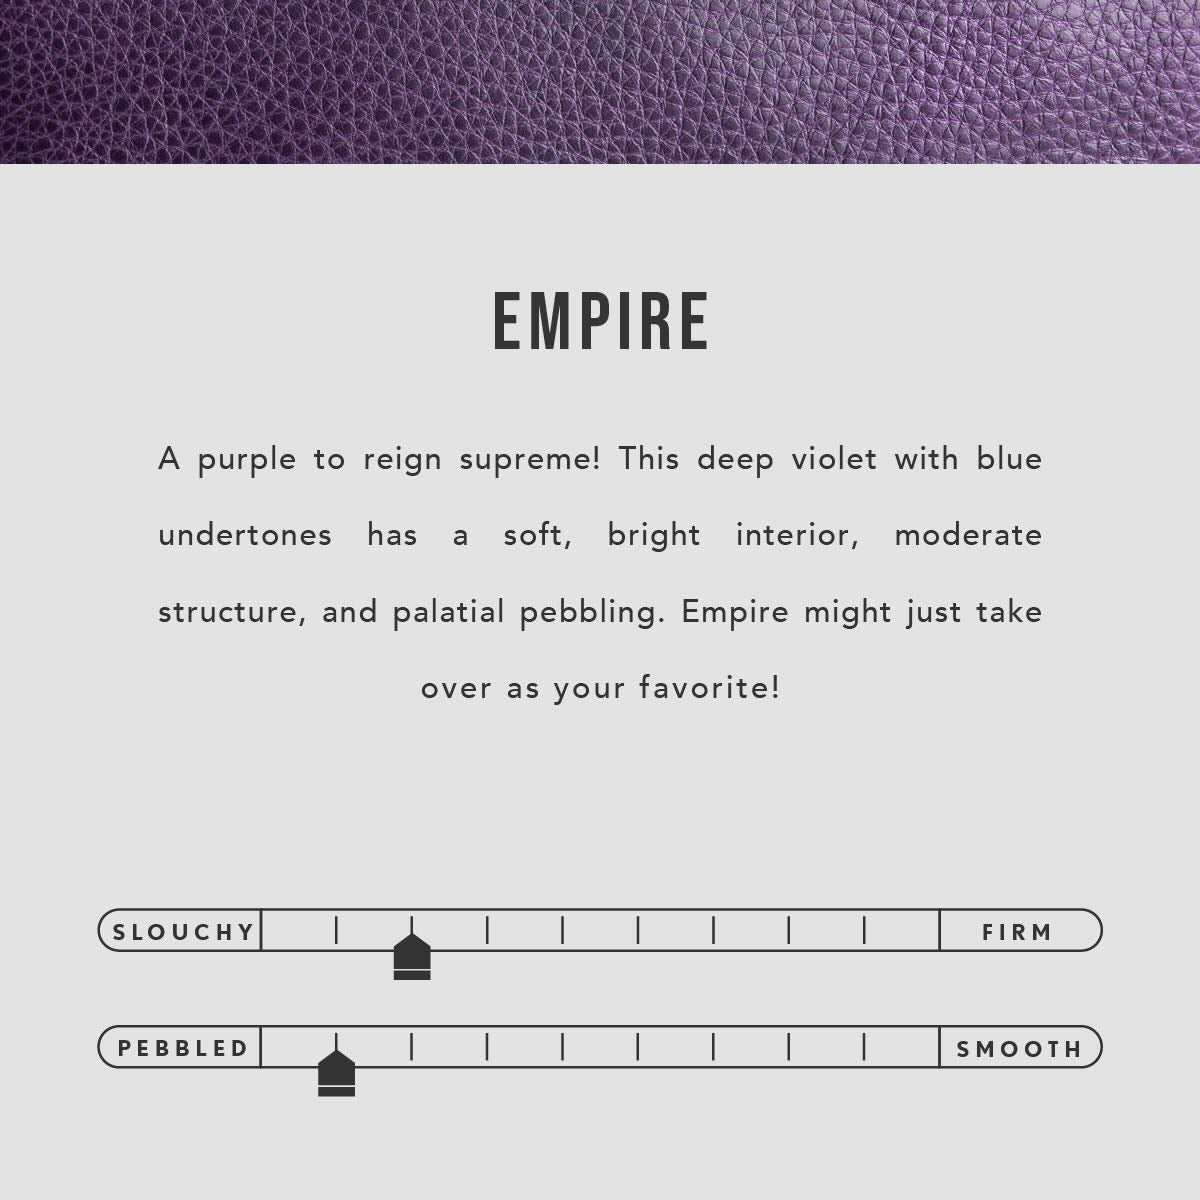 Empire | infographic